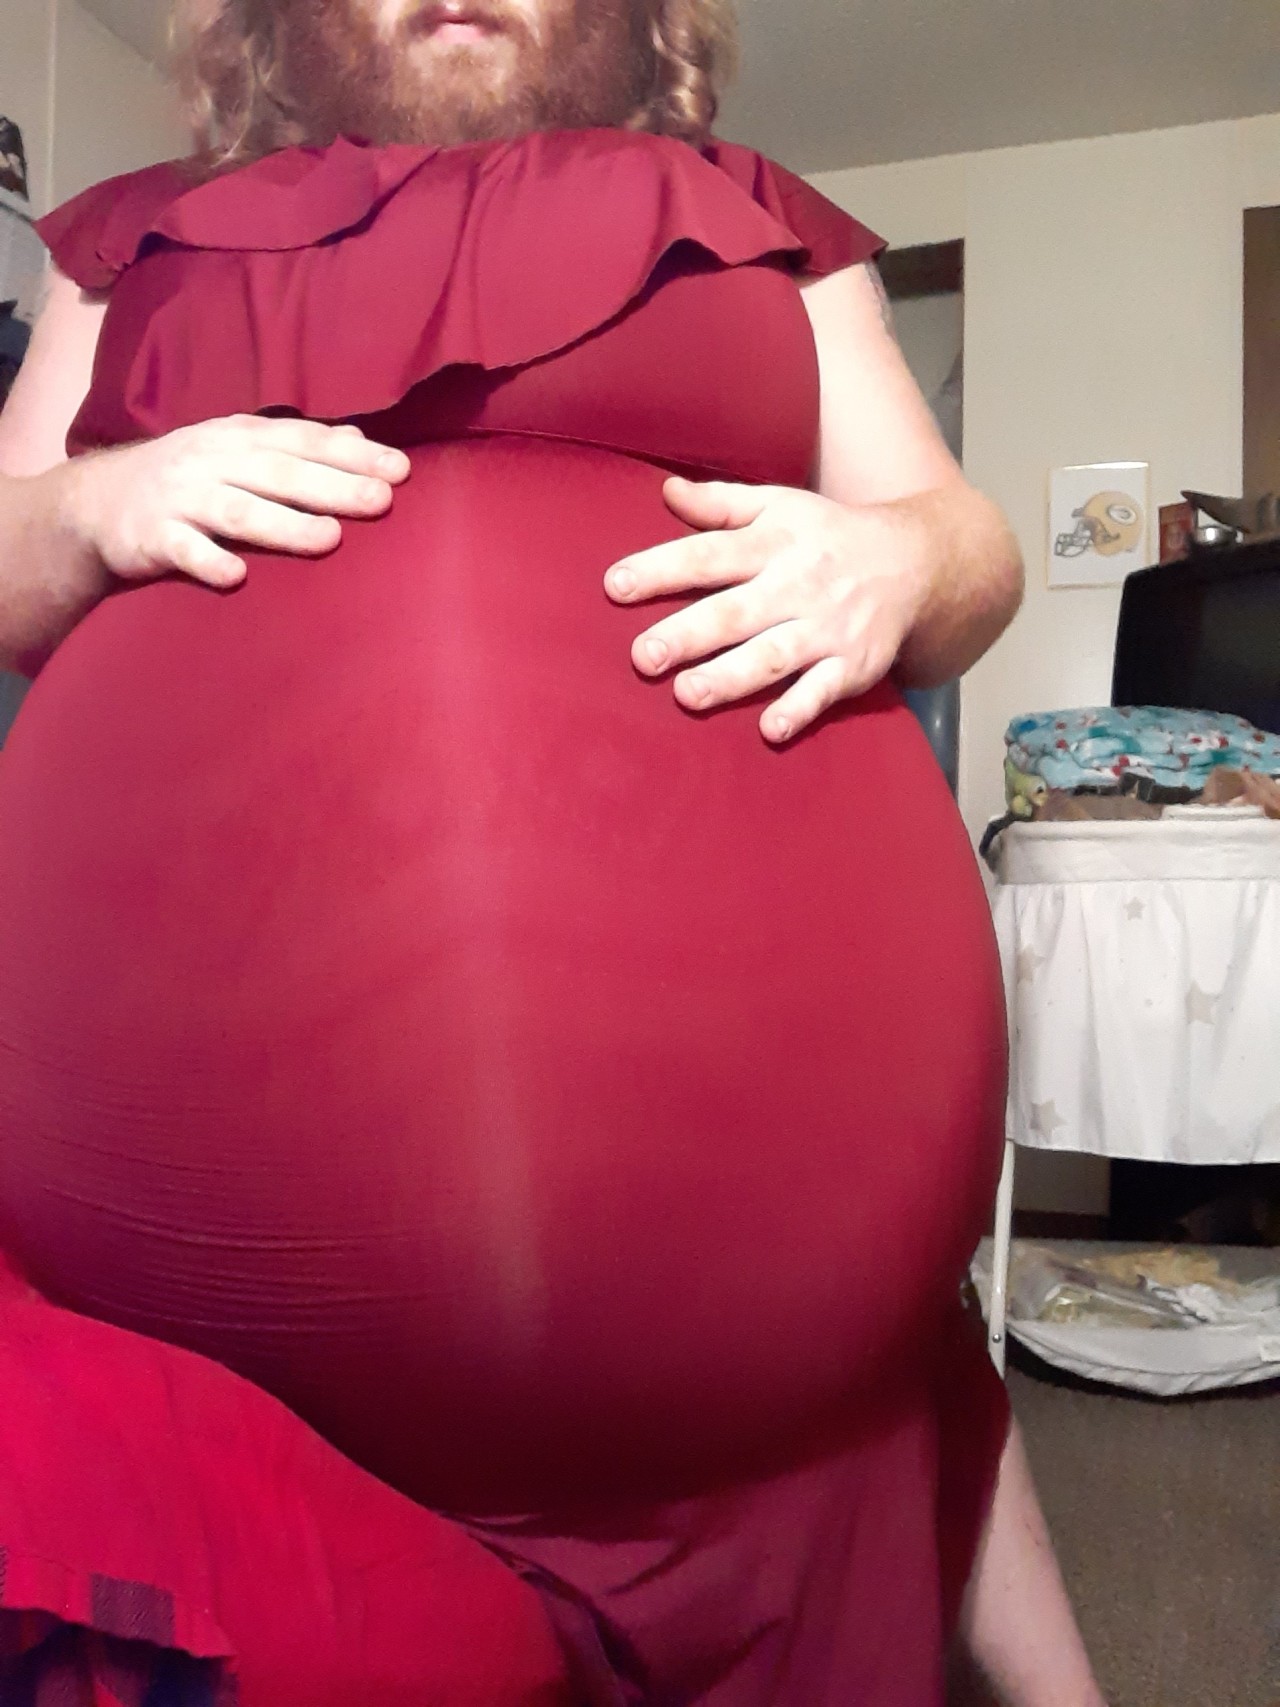 Balloon Belly On Tumblr